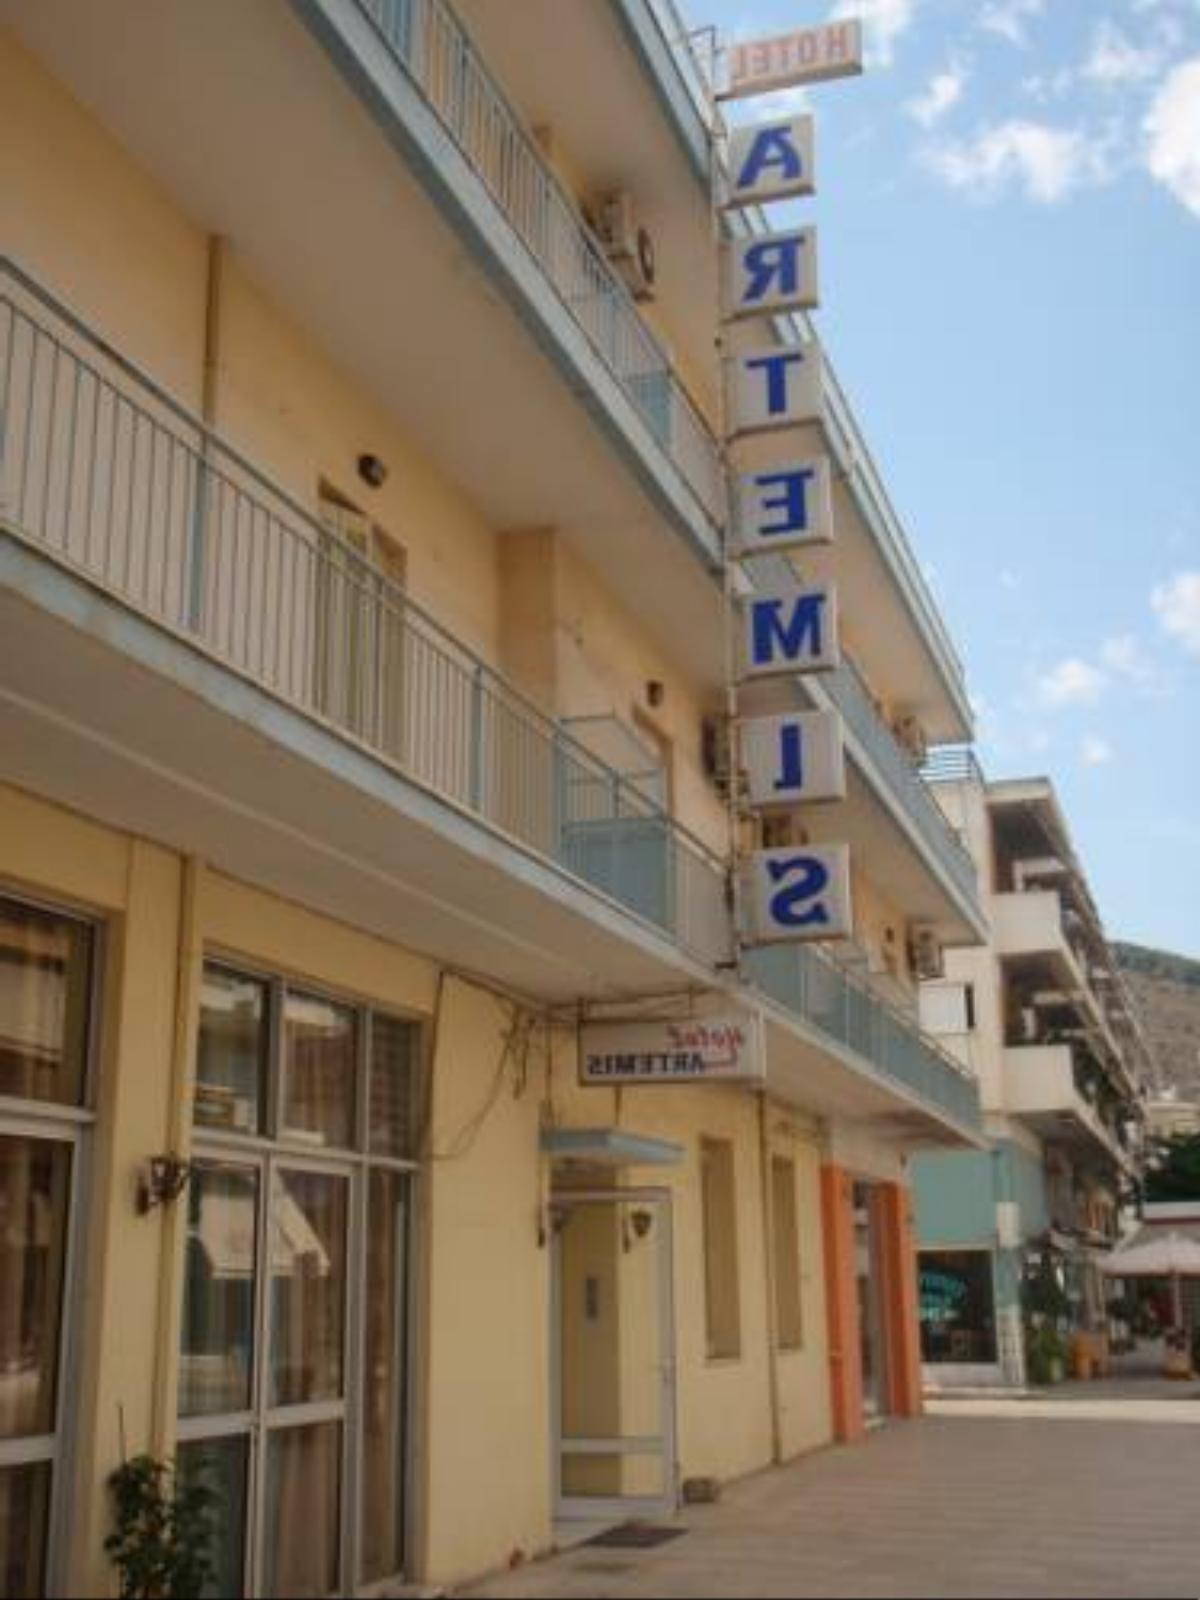 Artemis Hotel Nafplio Greece